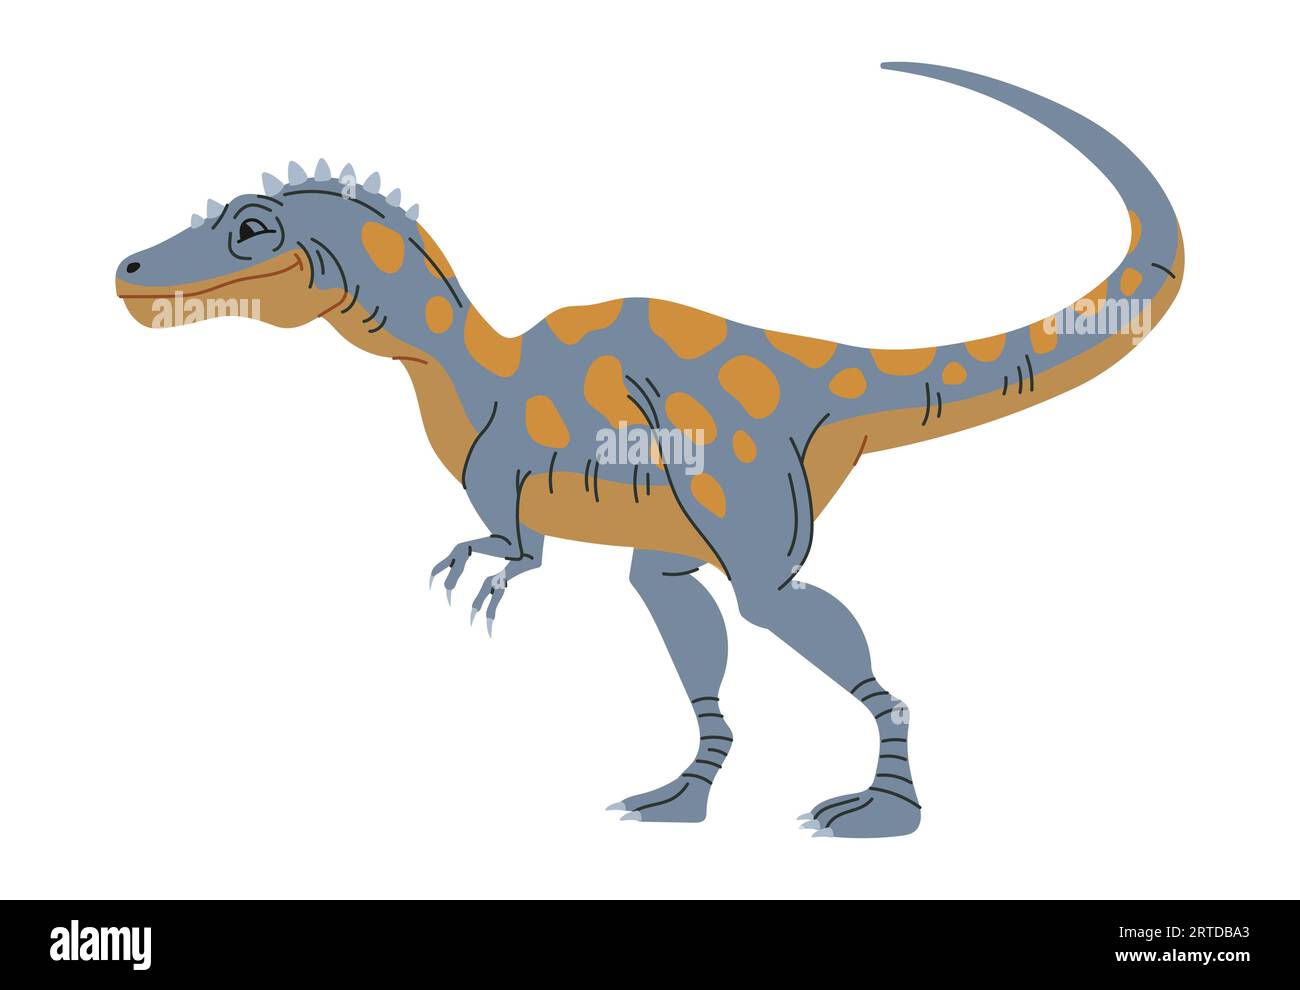 Jouet drôle pour enfants dino bébé, dinosaure enfantin tyrannosaurus. Vecteur Carnotaurus théropode repéré dinosaure caractère animal de la région préhistorique Illustration de Vecteur